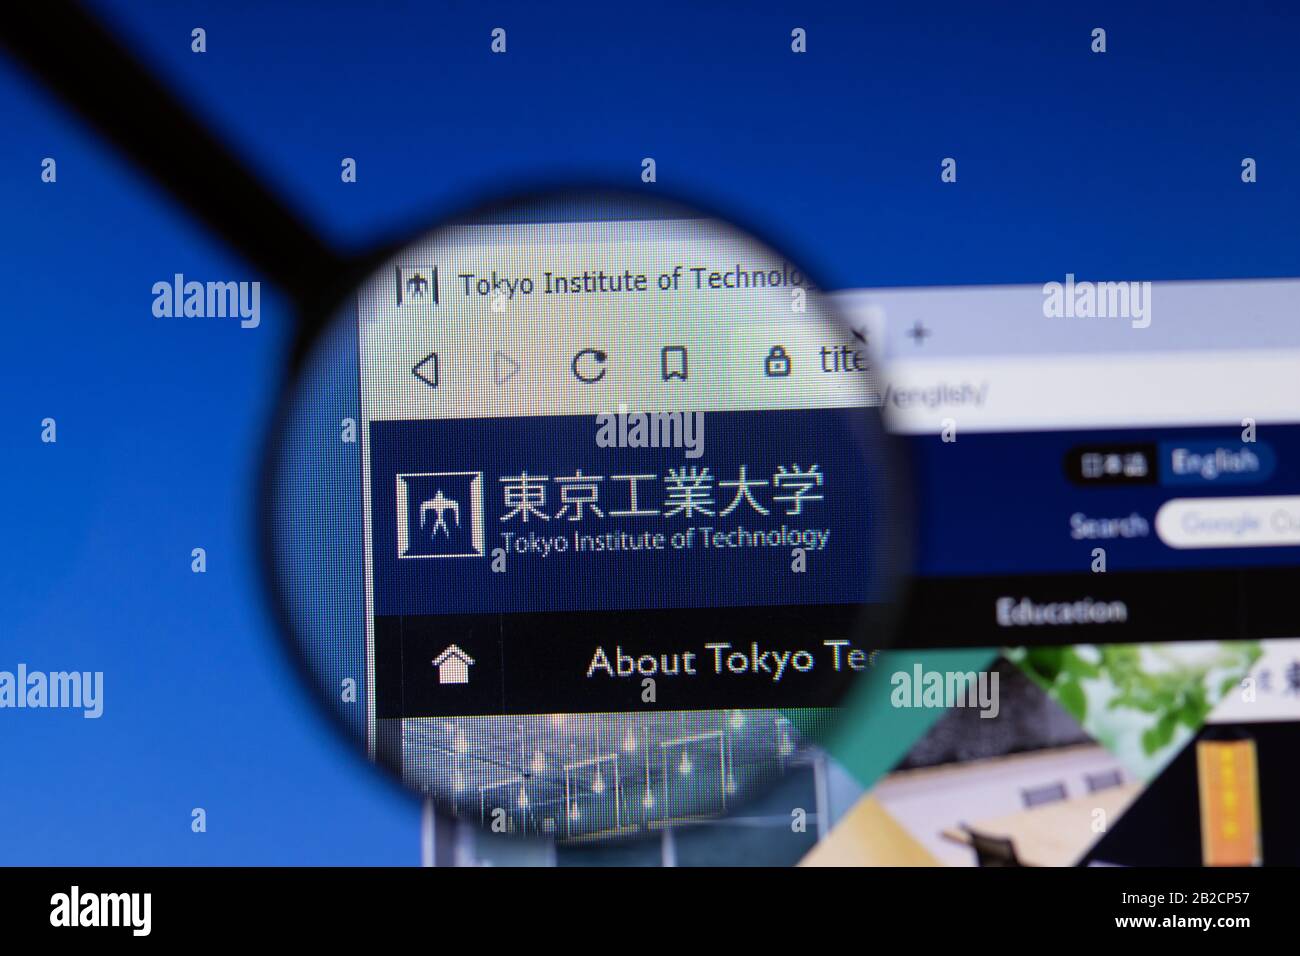 Los Angeles, Californie, États-Unis - 3 mars 2020: Tokyo Institute of Technology website HomePage logo visible sur l'écran d'affichage, éditorial illustratif Banque D'Images